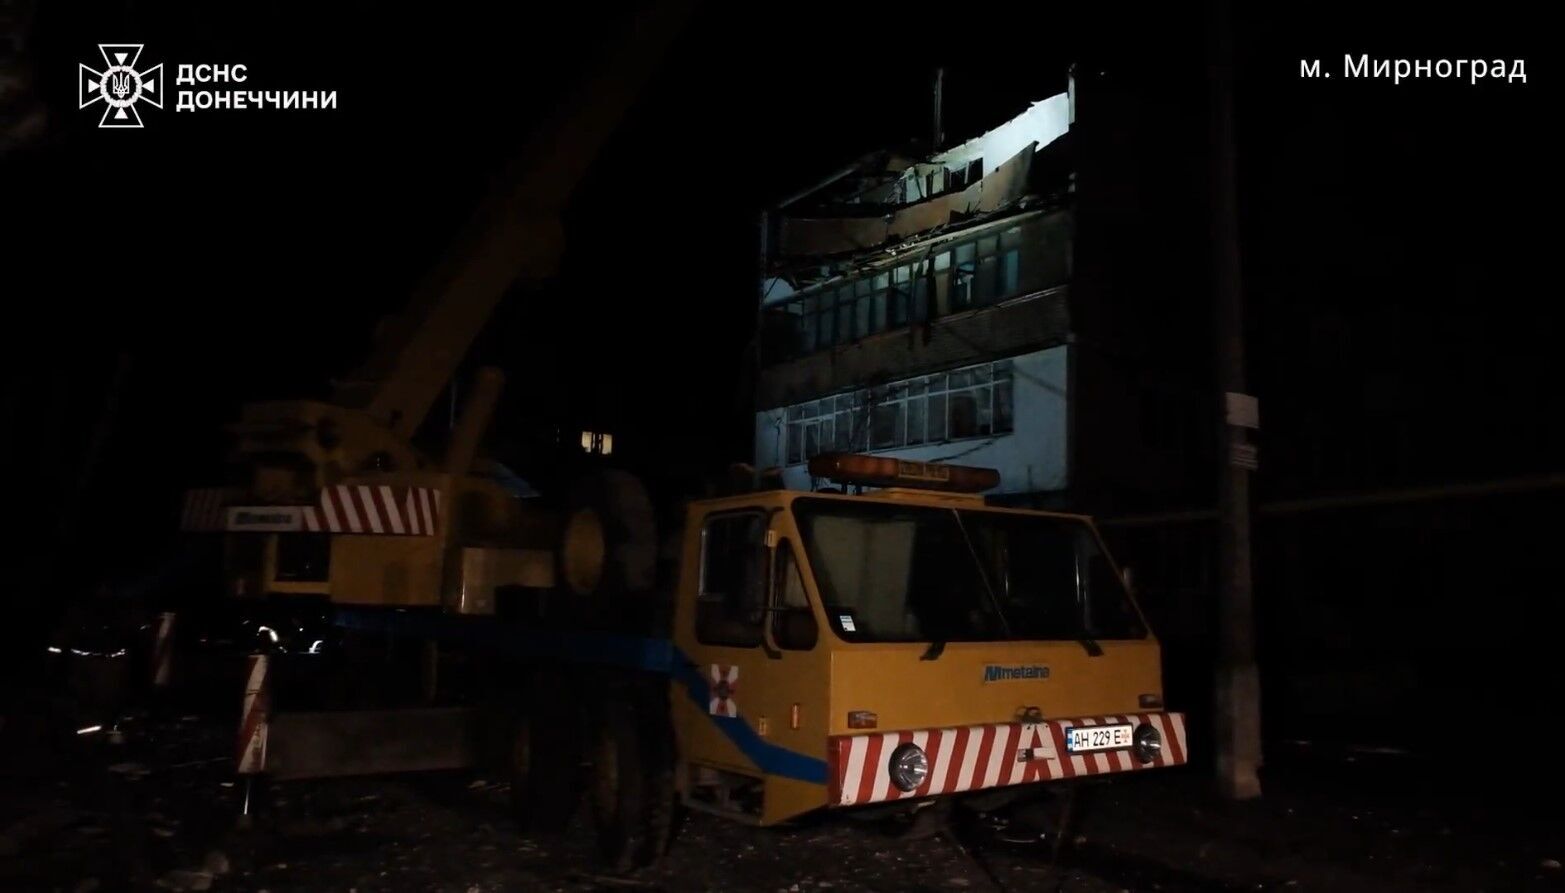 Черговий злочин агресора: у ДСНС показали, як рятували людей з-під завалів у Мирнограді після удару РФ. Відео